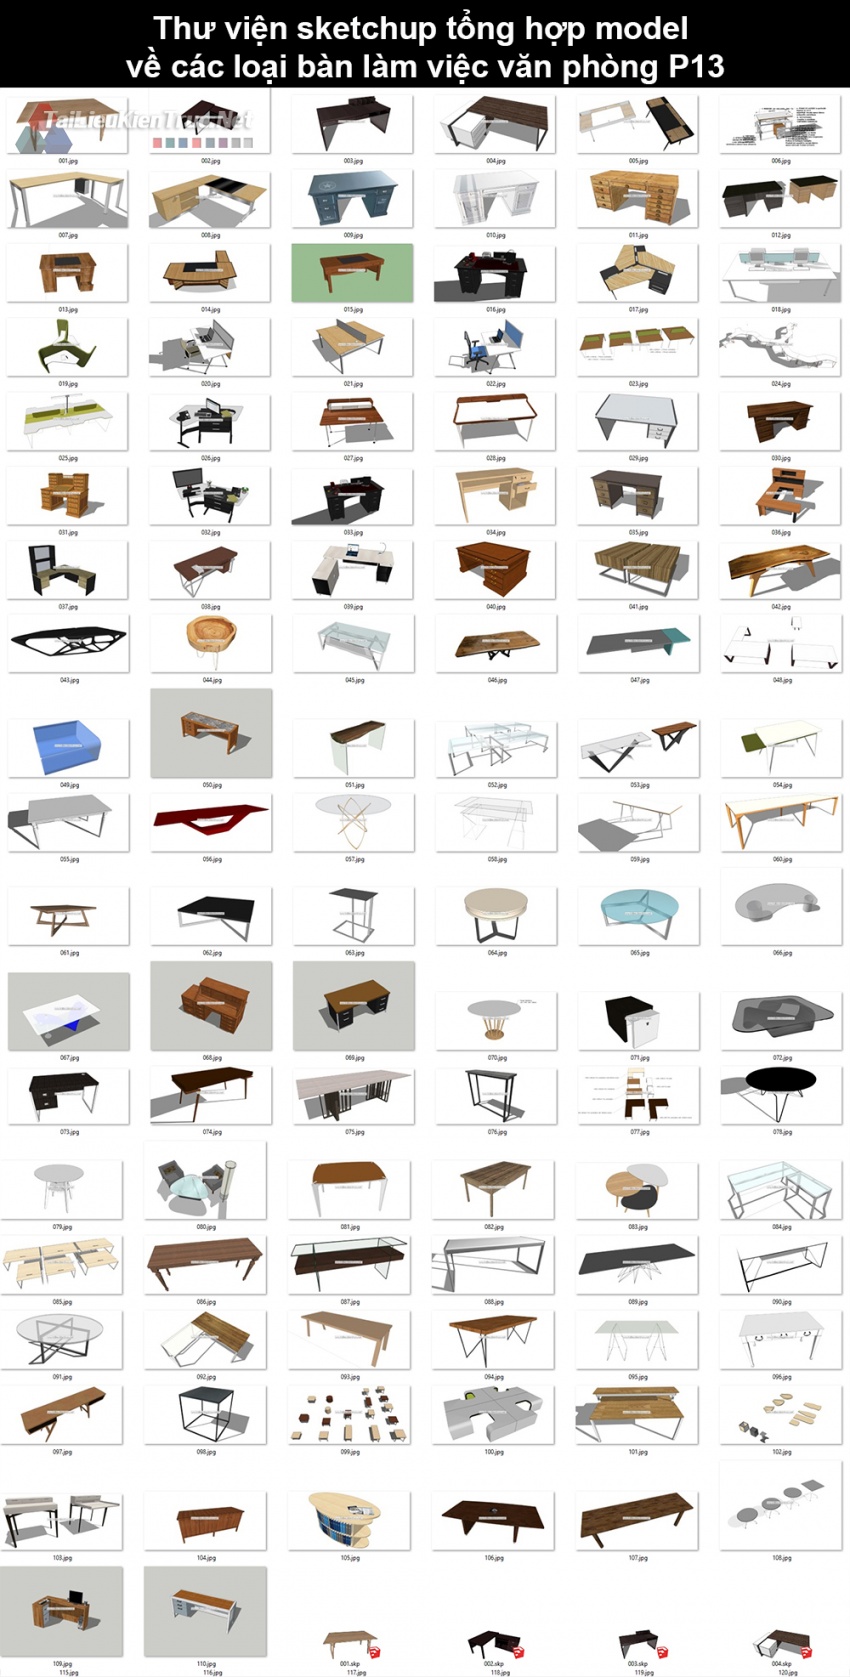 Thư viện sketchup tổng hợp model về các loại bàn làm việc văn phòng P13